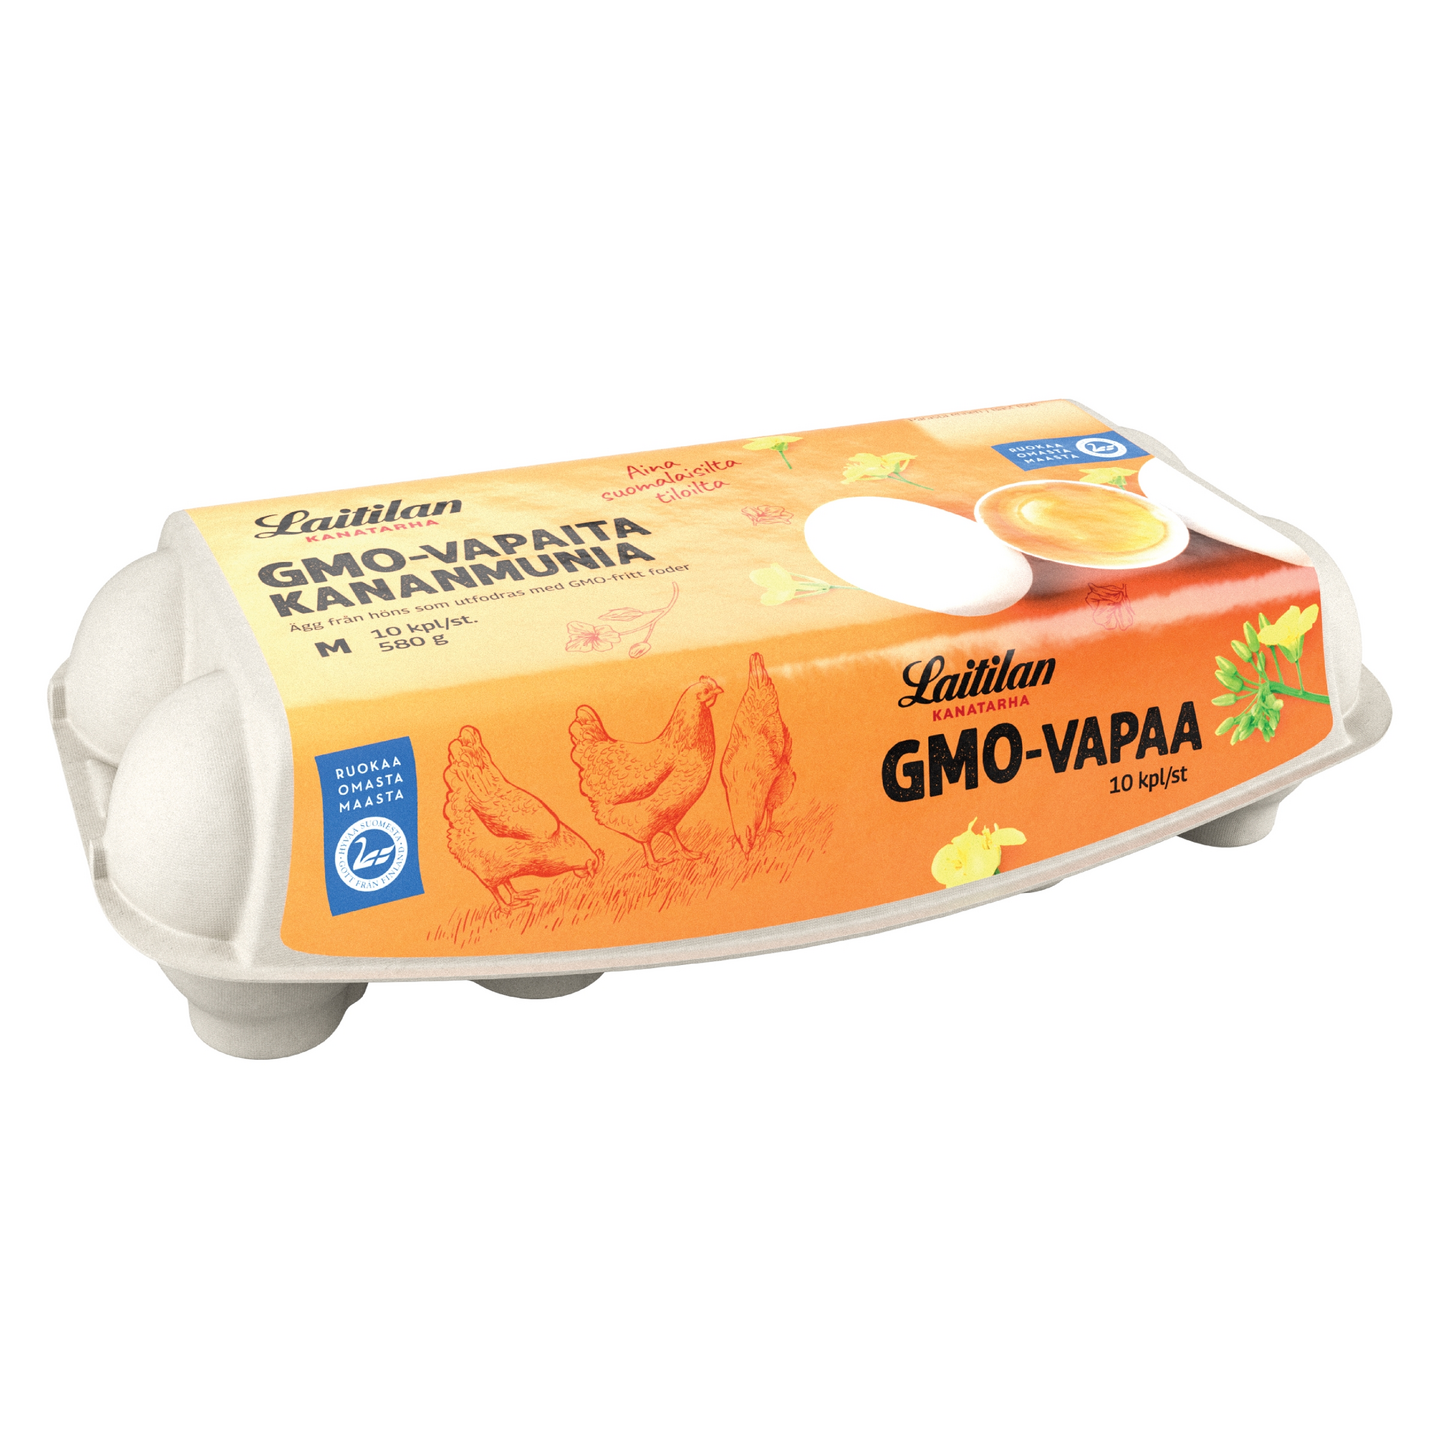 Laitilan Kanatarhan GMO-vapaa vapaan kanan kananmuna M10 580g | K-Ruoka  Verkkokauppa